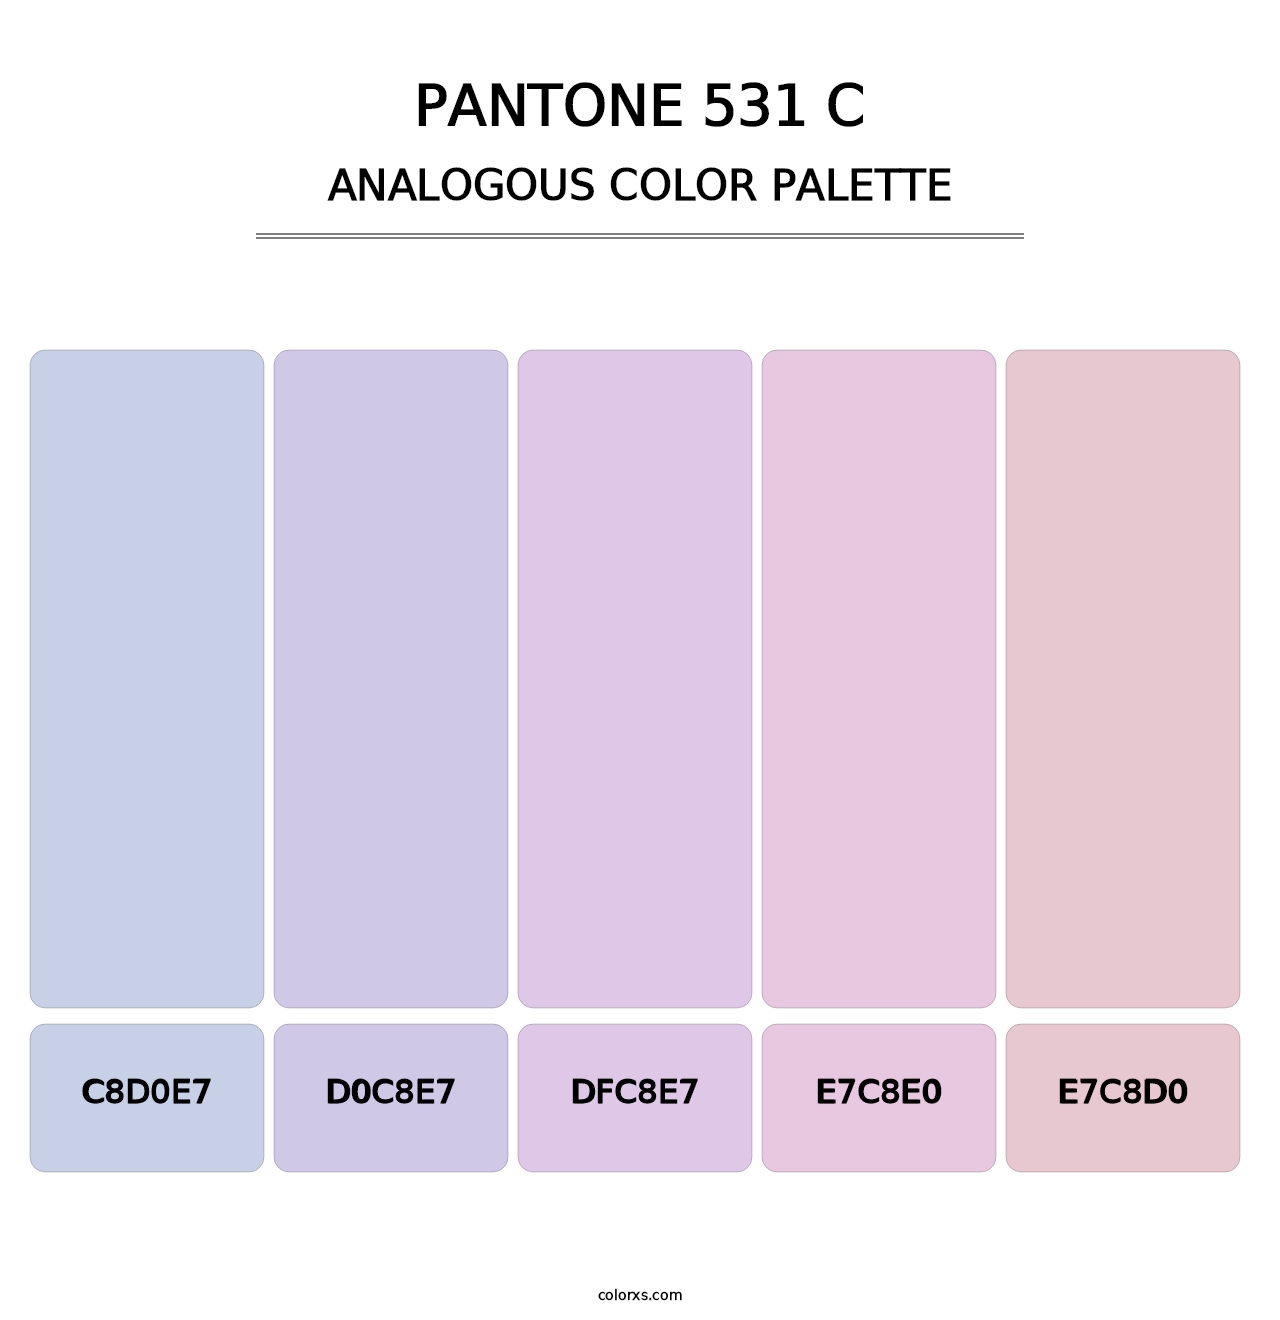 PANTONE 531 C - Analogous Color Palette